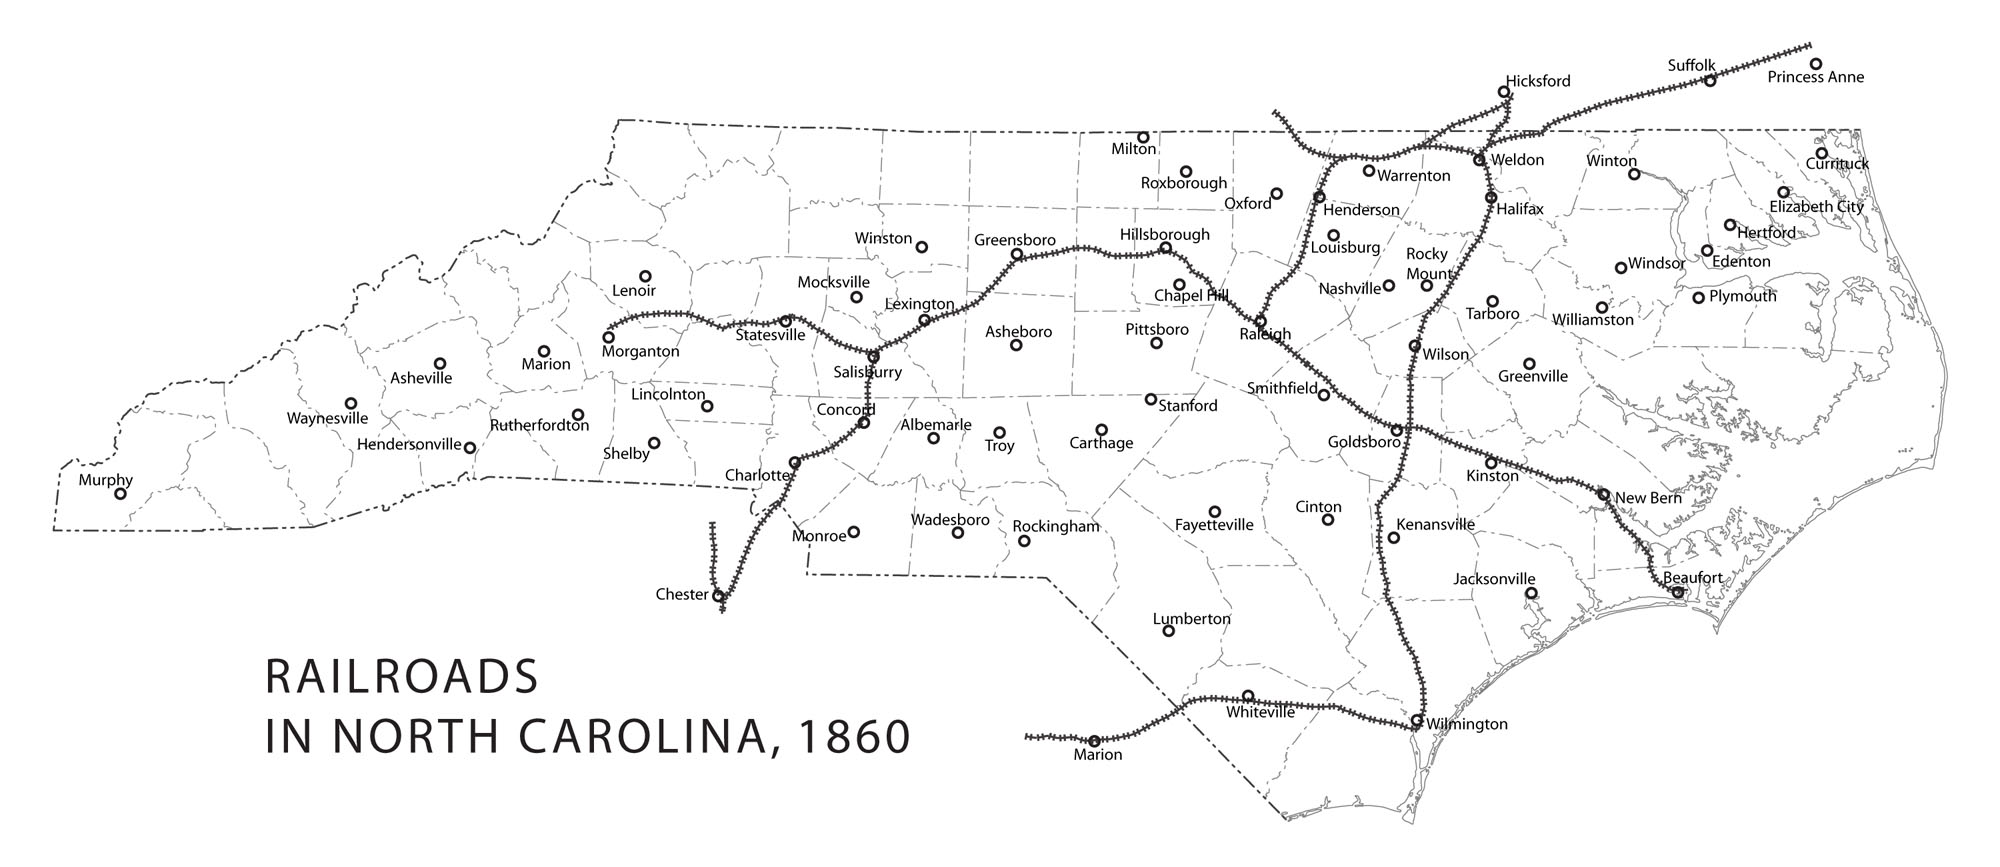 Railroads in North Carolina, 1860